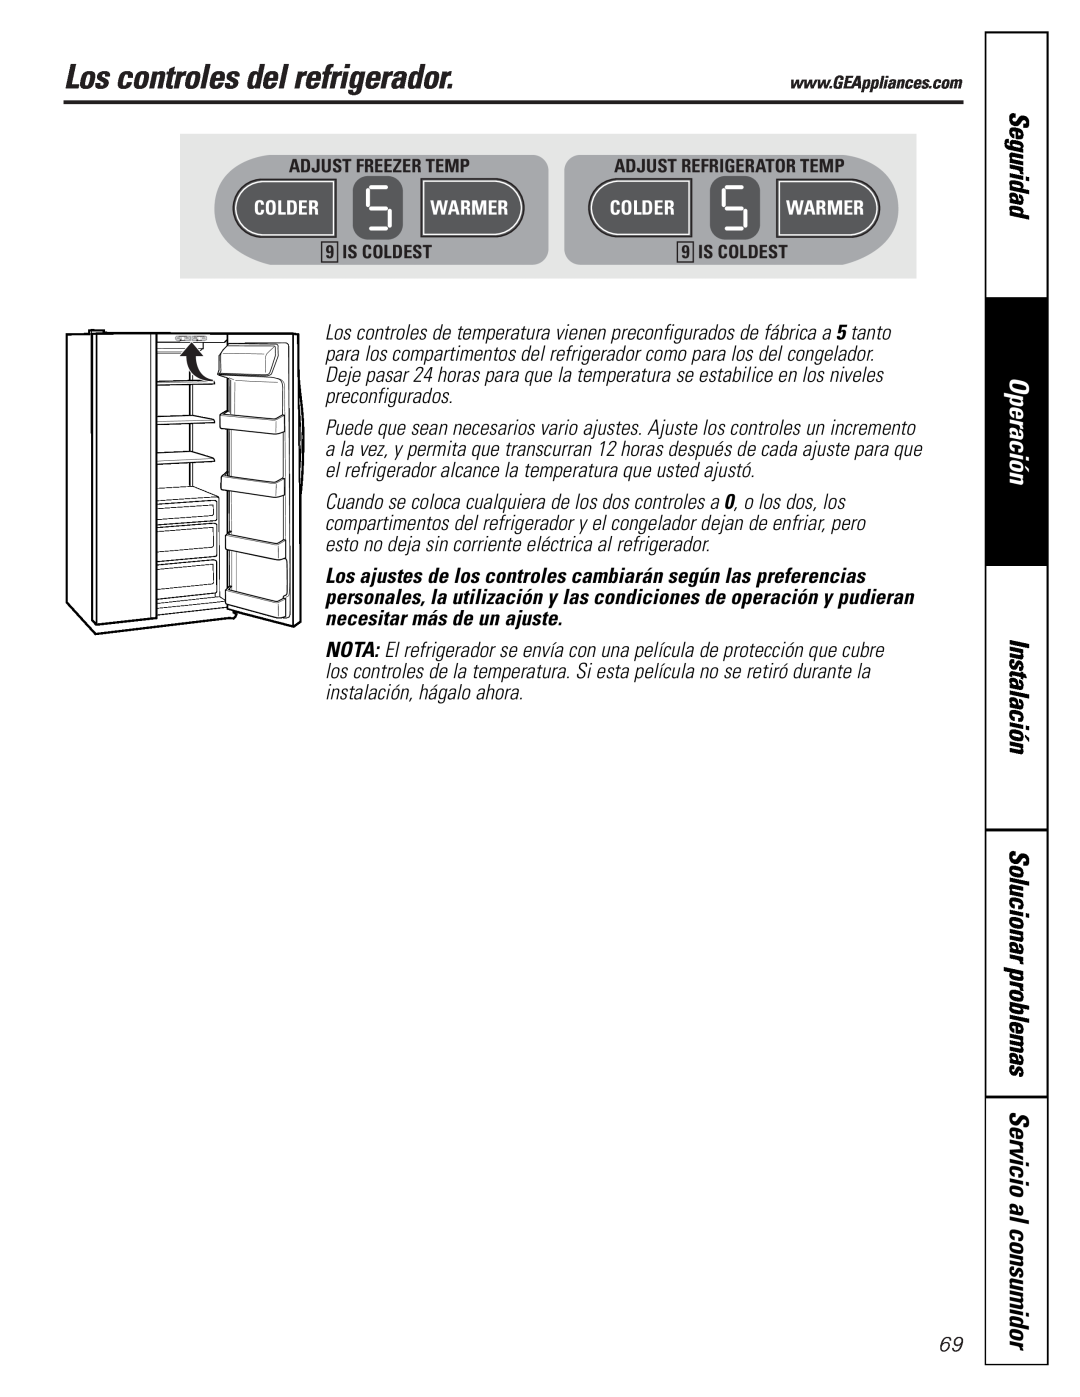 GE 25 Los controles del refrigerador, Seguridad, Operación, Instalación, Solucionar problemas Servicio al consumidor 